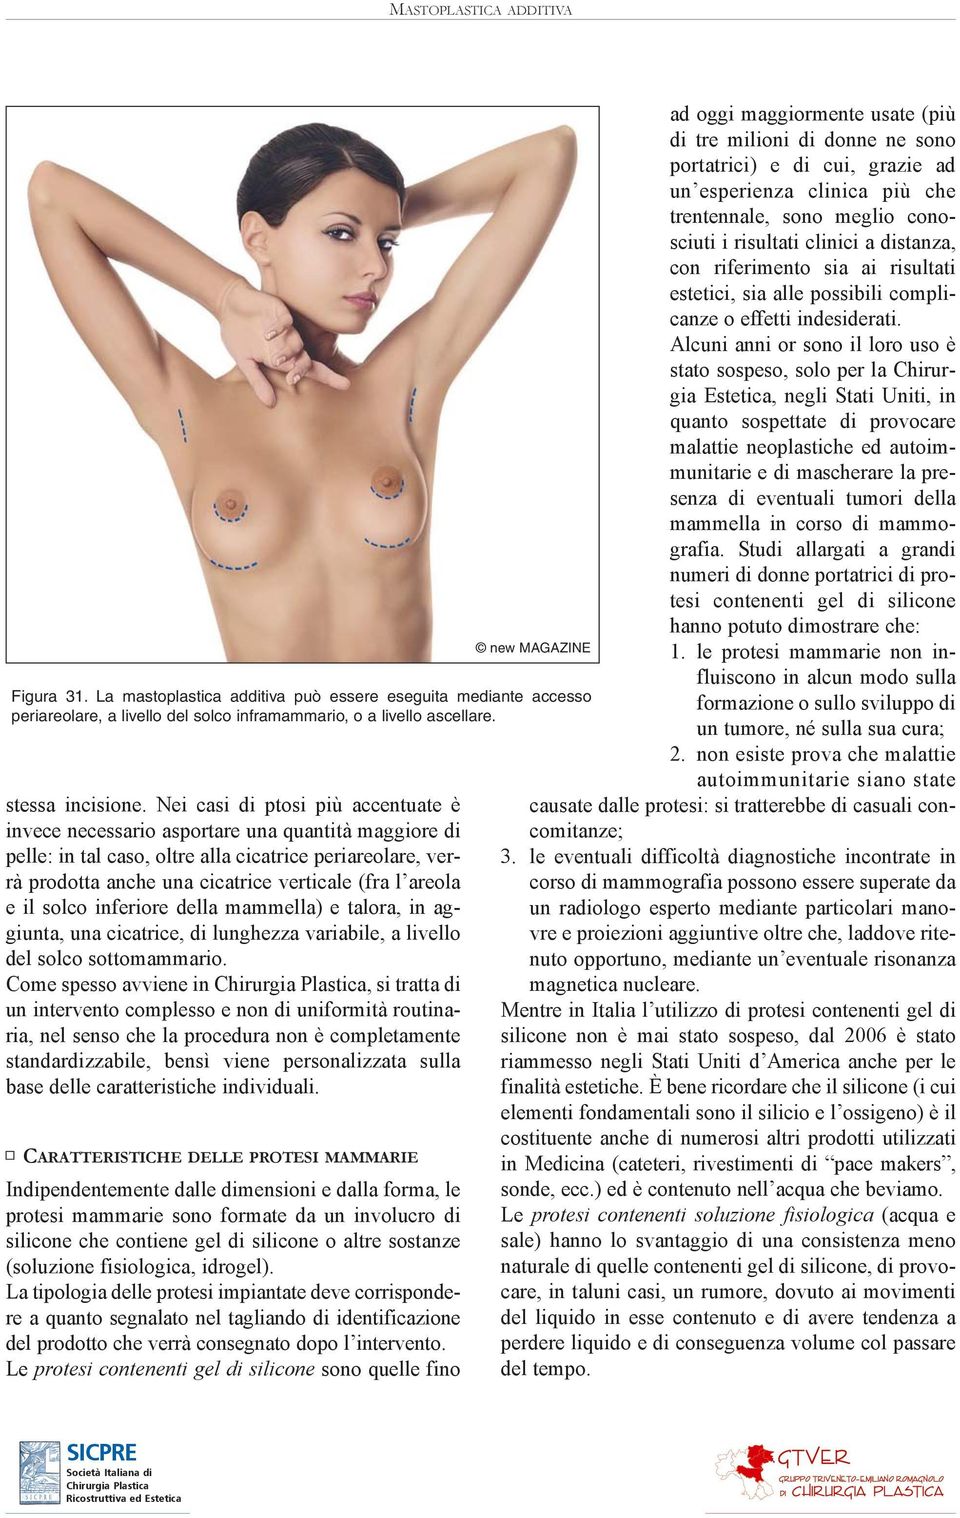 areola e il solco inferiore della mammella) e talora, in aggiunta, una cicatrice, di lunghezza variabile, a livello del solco sottomammario.